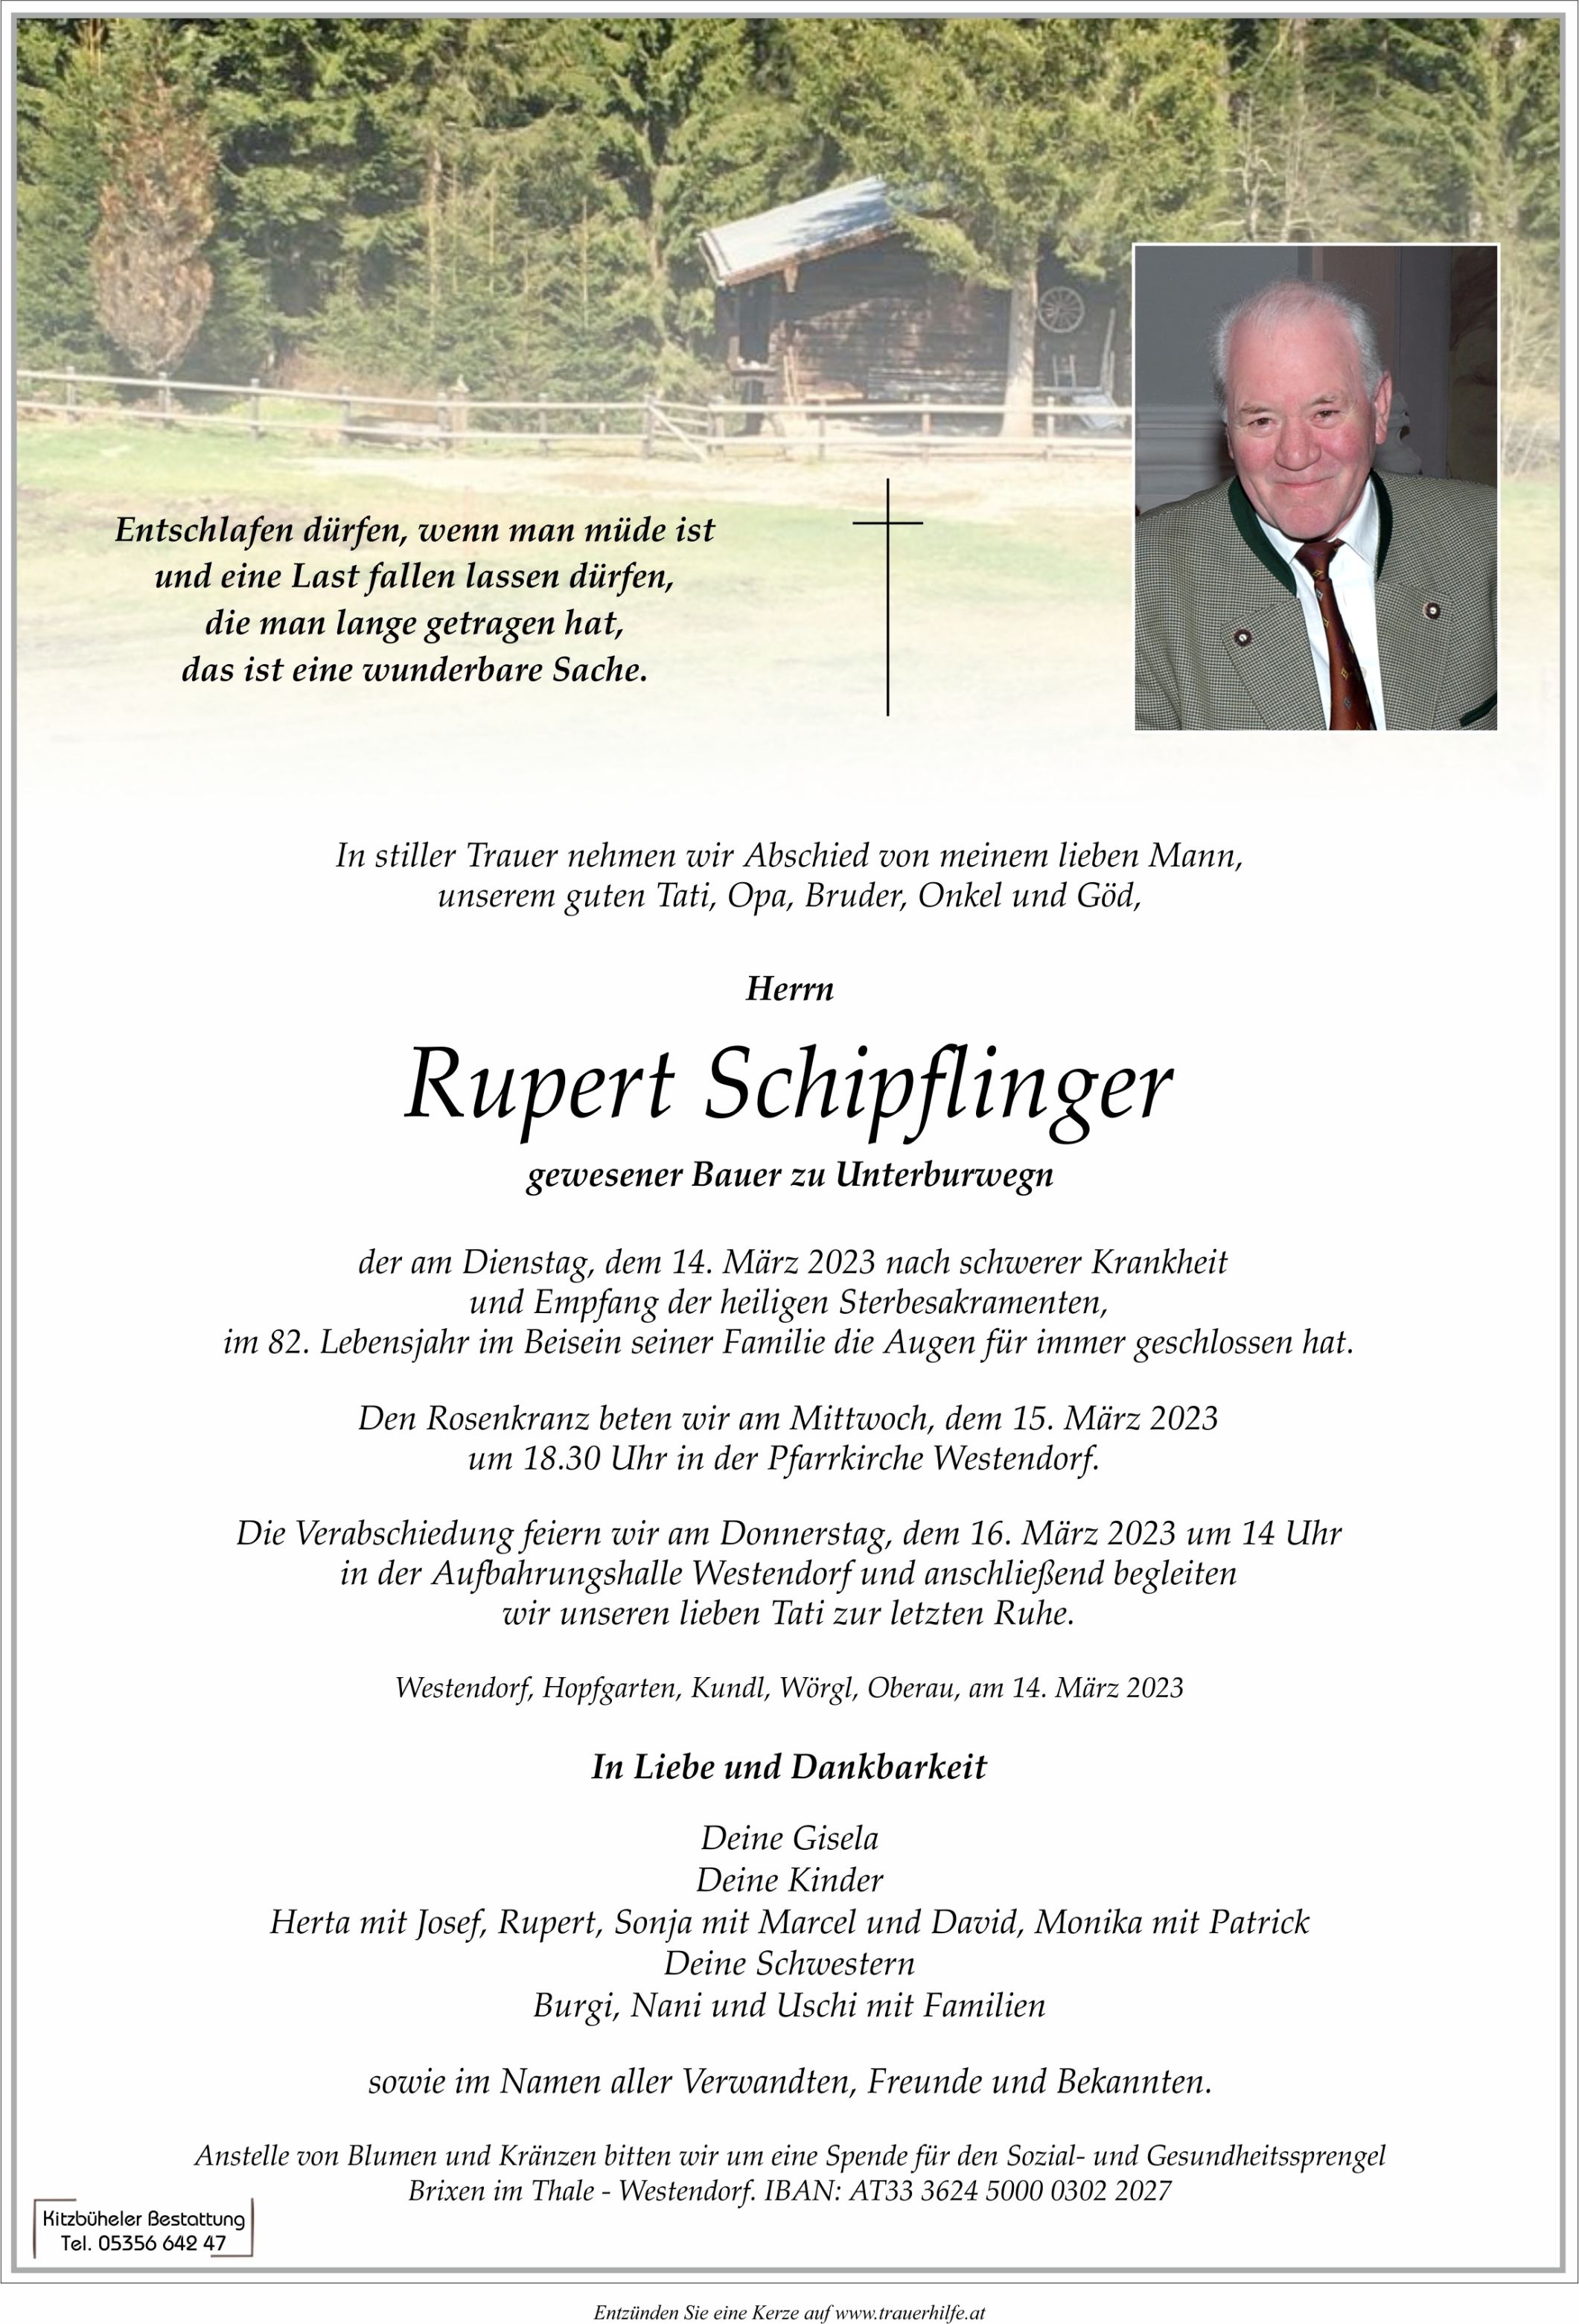 Rupert Schipflinger